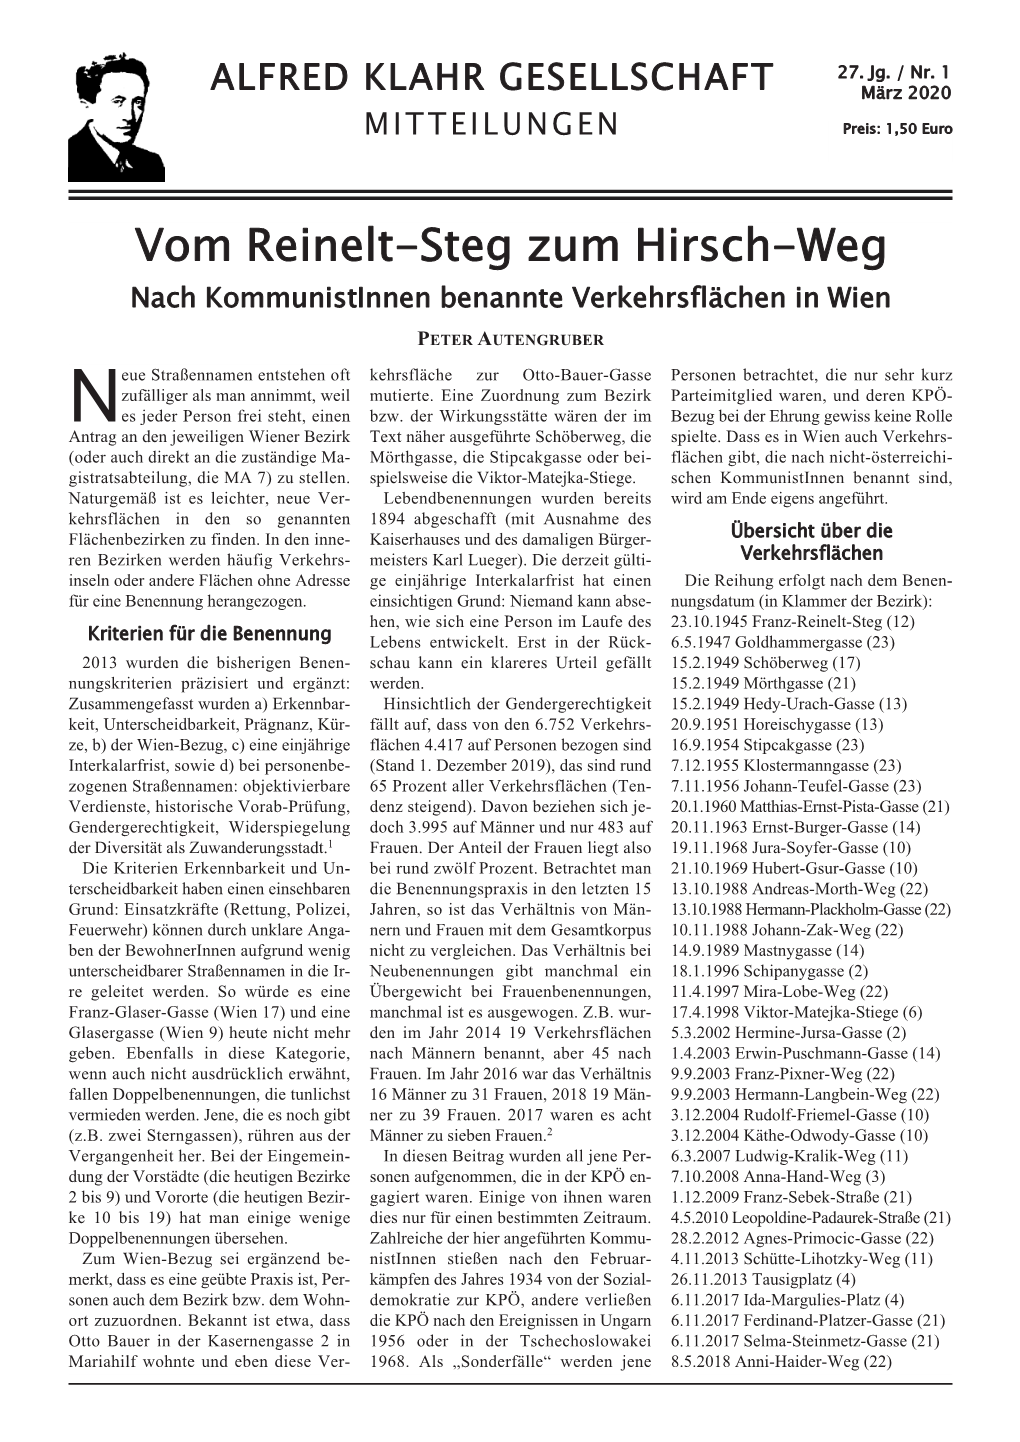 Mitteilungen Der Alfred Klahr Gesellschaft, Nr. 1/2020, Als Pdf-Datei